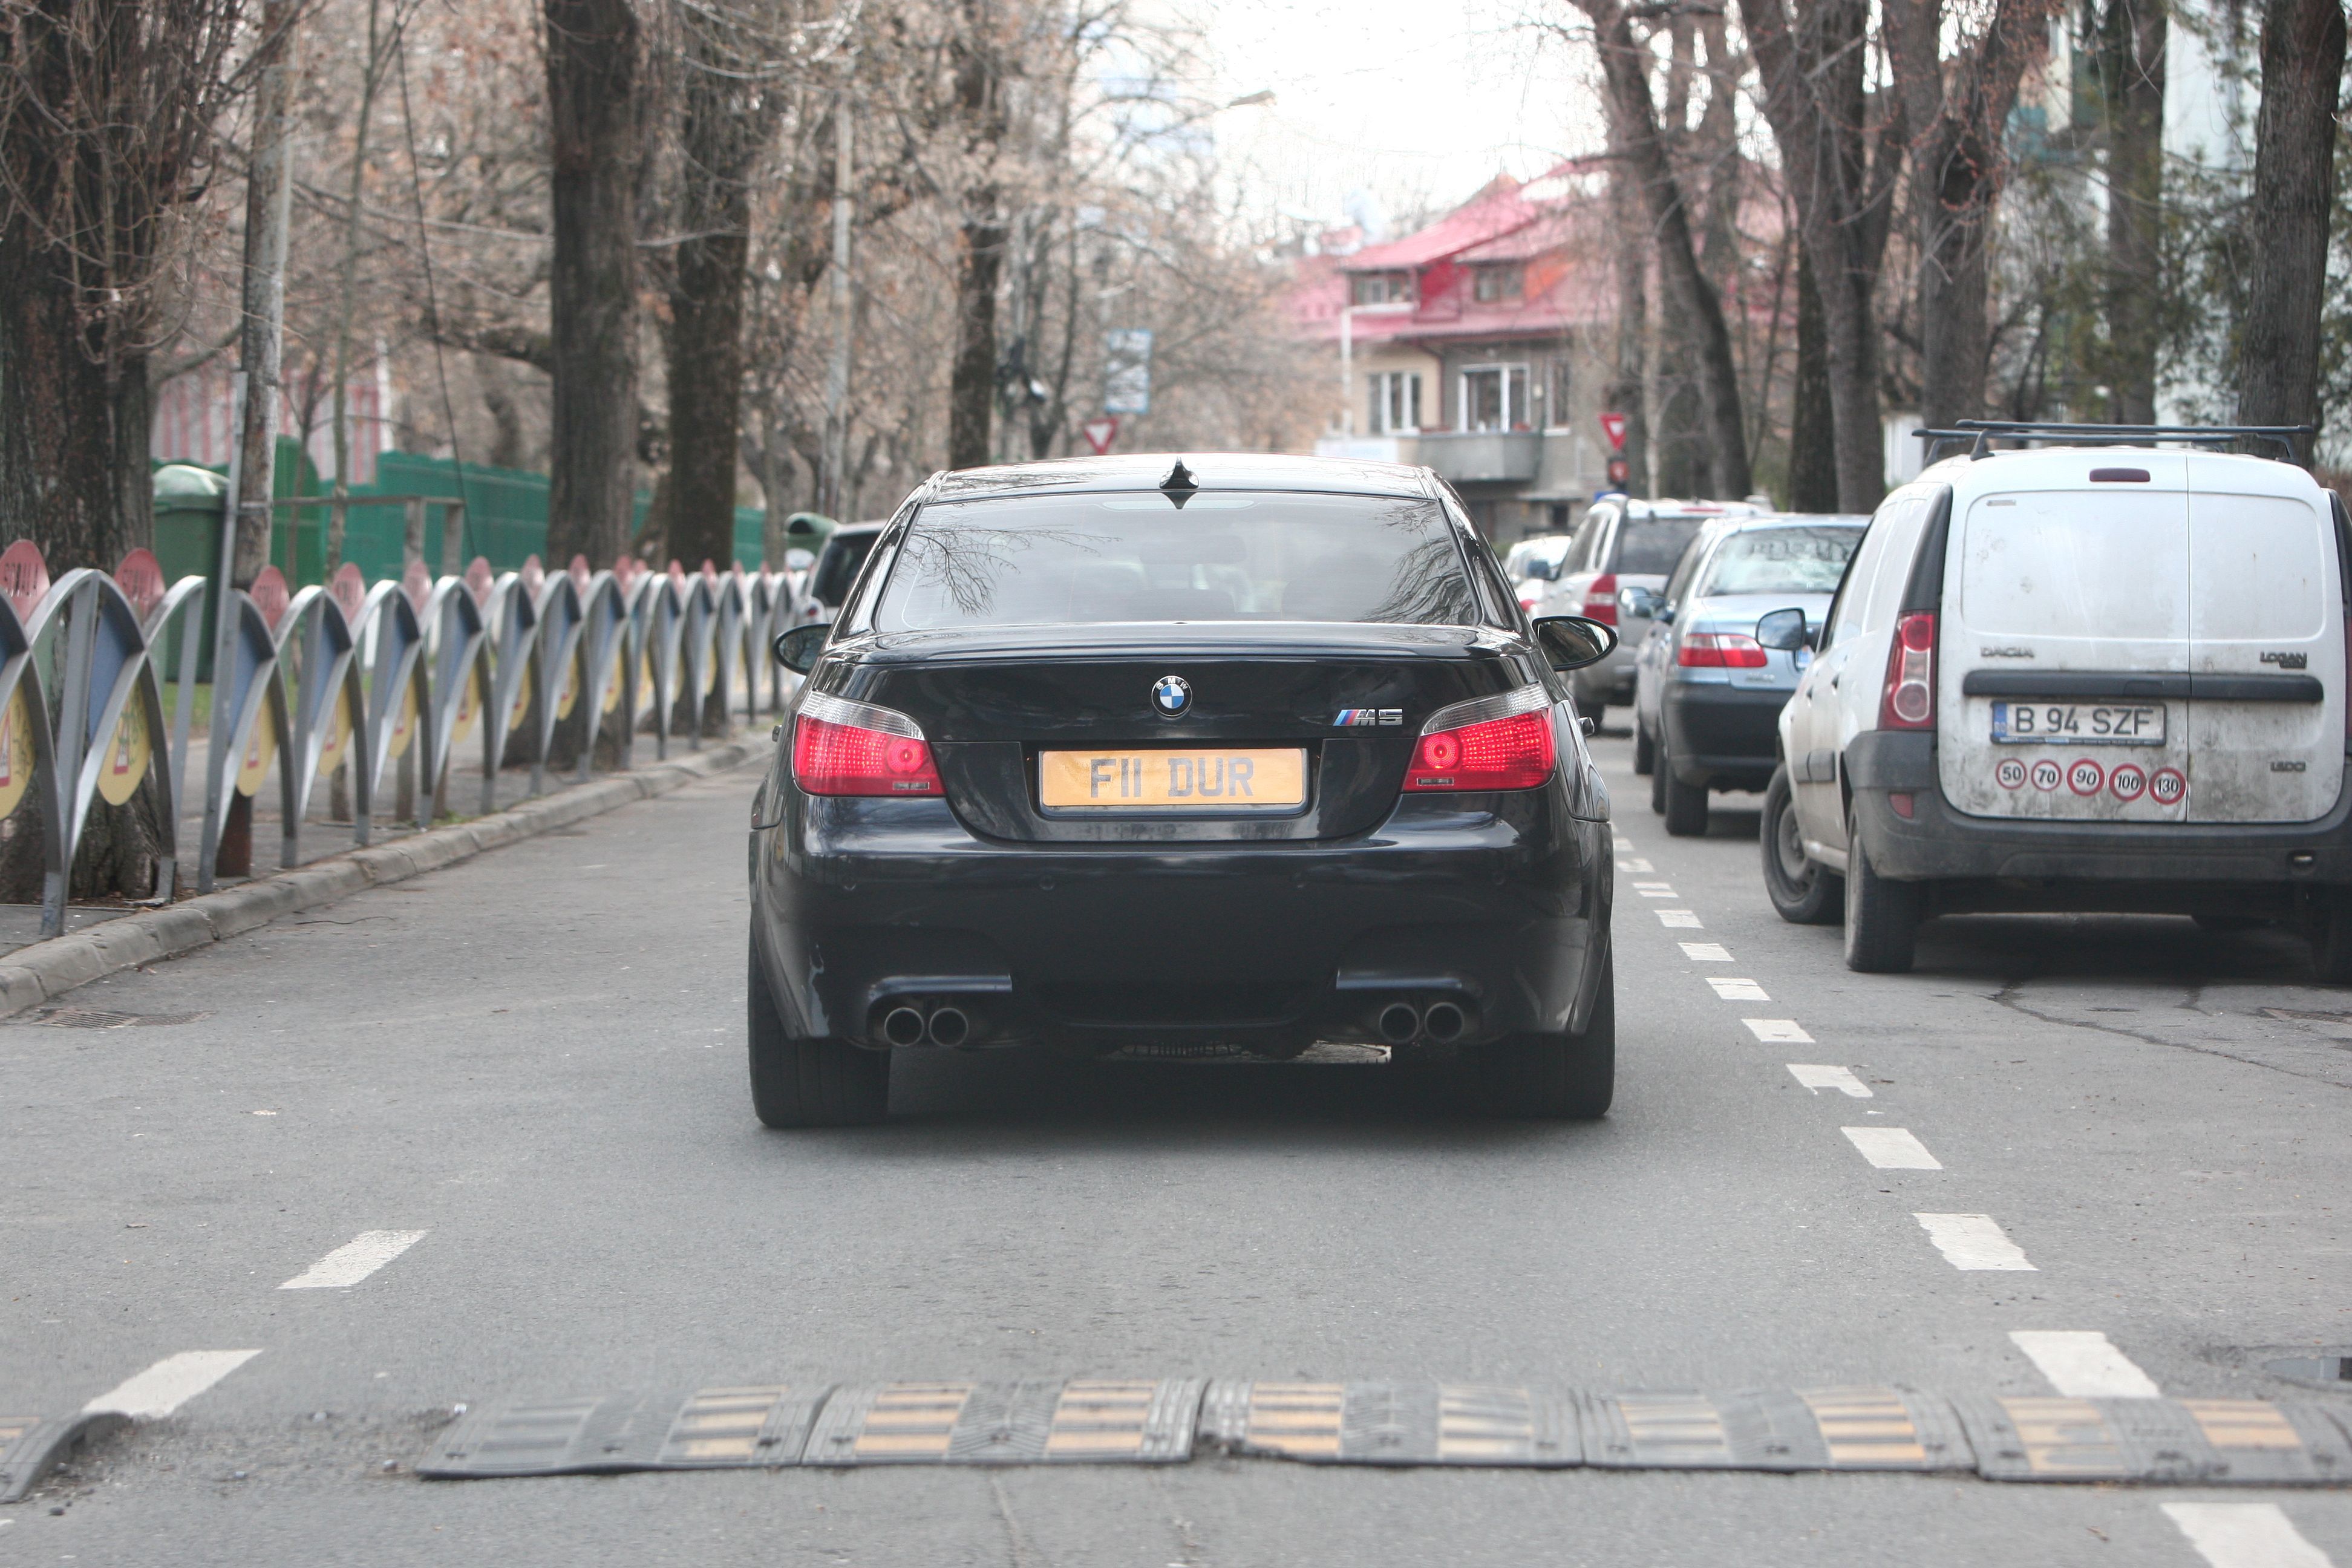 ”FII DUR” - este numărul de înmatriculare ales de şoferul acestui BMW